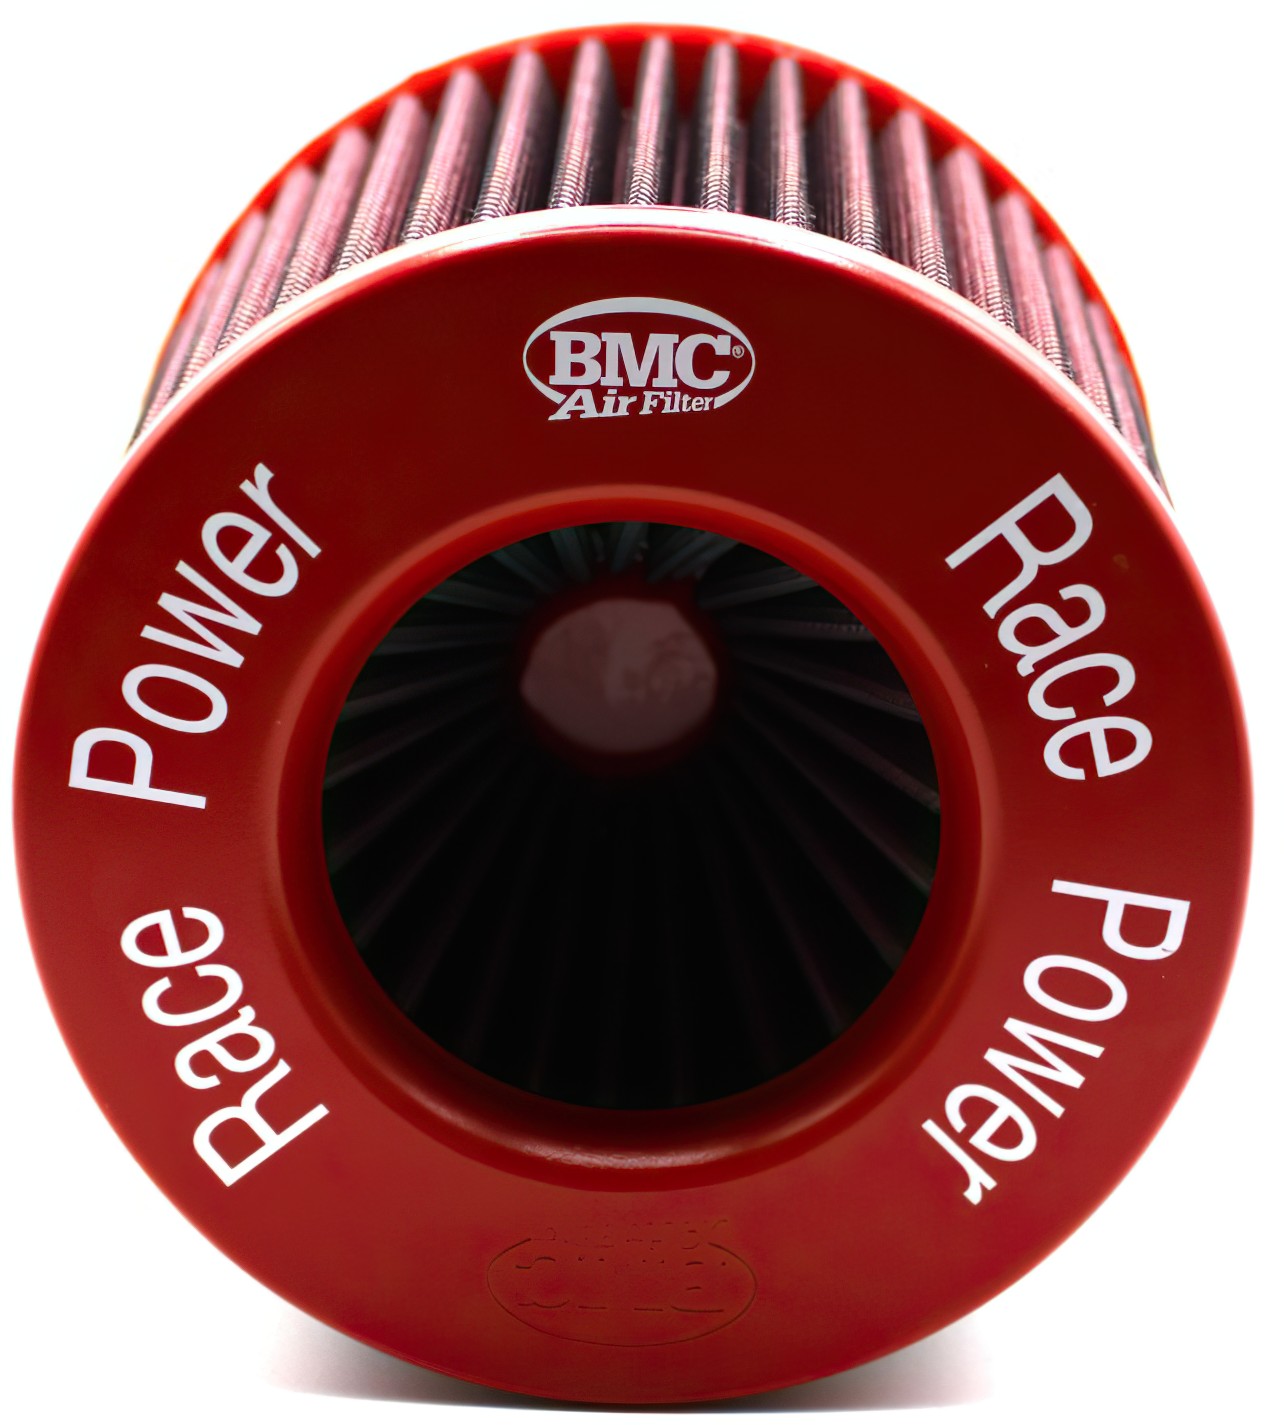  BMC Twin Air Filter FBTW70-140 Metal Top 